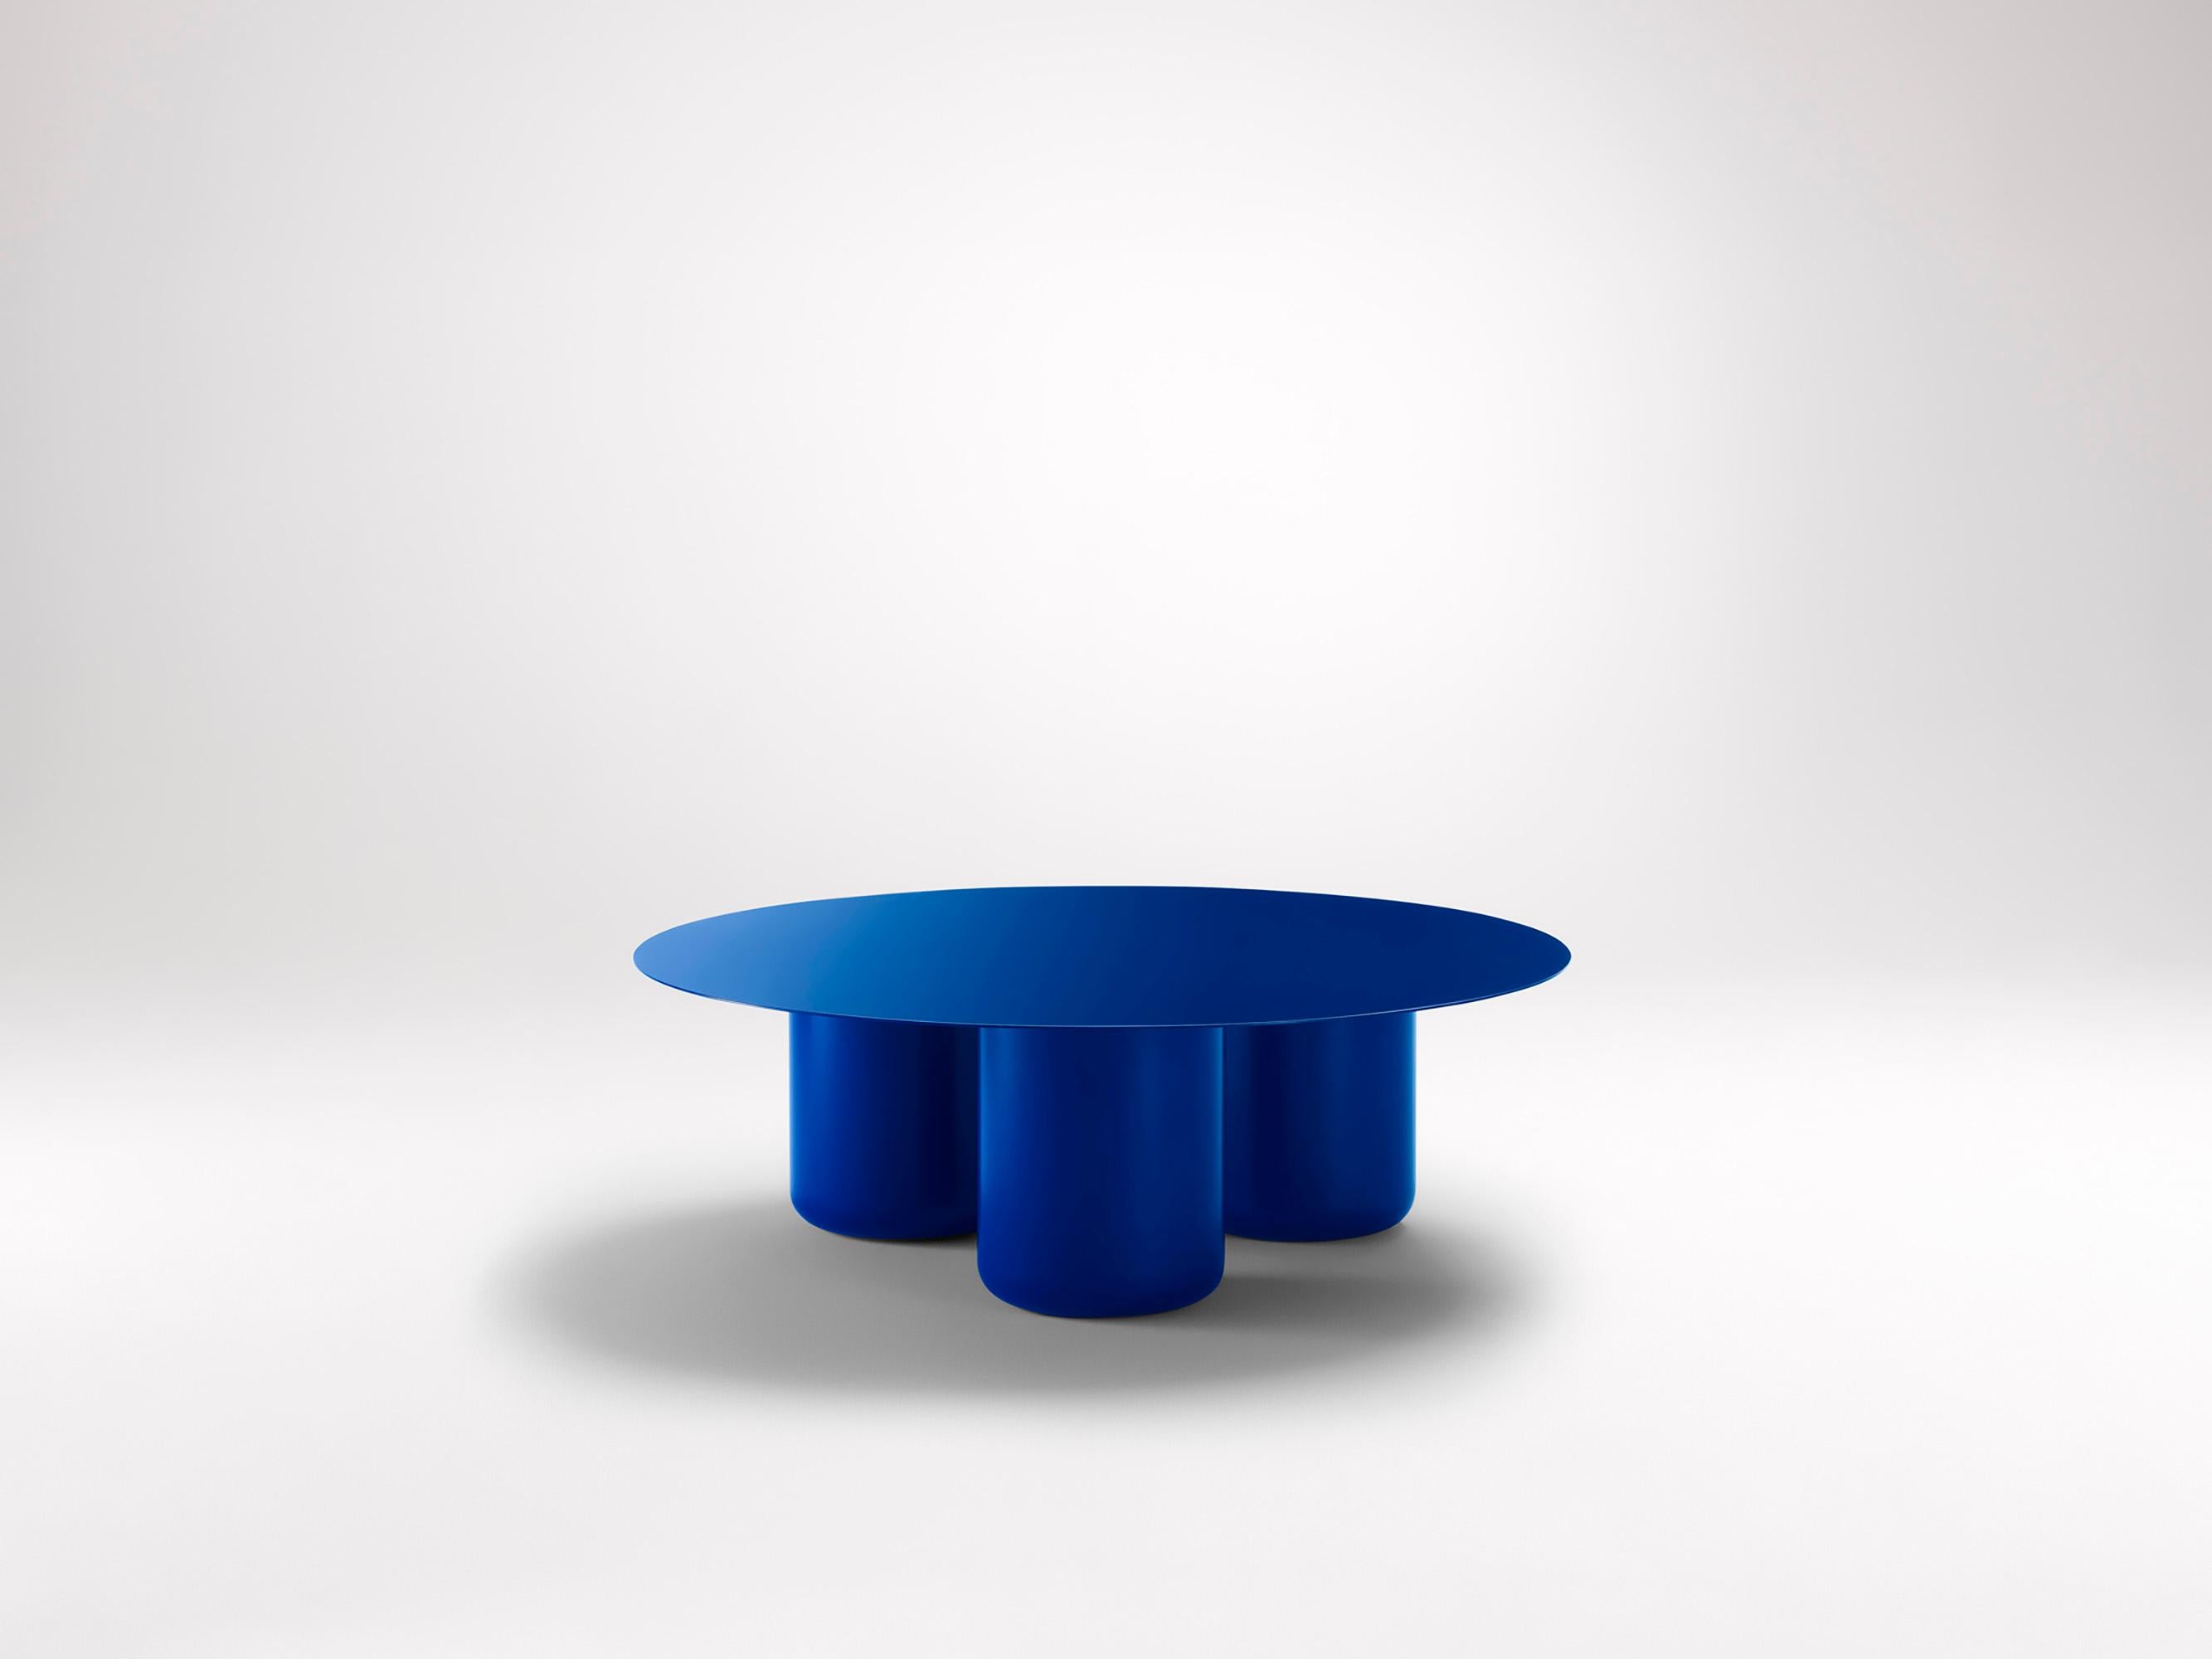 Vivid Blue Runder Tisch von Coco Flip
Abmessungen: D 100 x H 32 / 36 / 40 / 42 cm
MATERIALIEN: Baustahl, pulverbeschichtet mit Zinkgrundierung. 
Gewicht: 34 kg

Coco Flip ist ein Studio für Möbel- und Beleuchtungsdesign in Melbourne, das von uns,